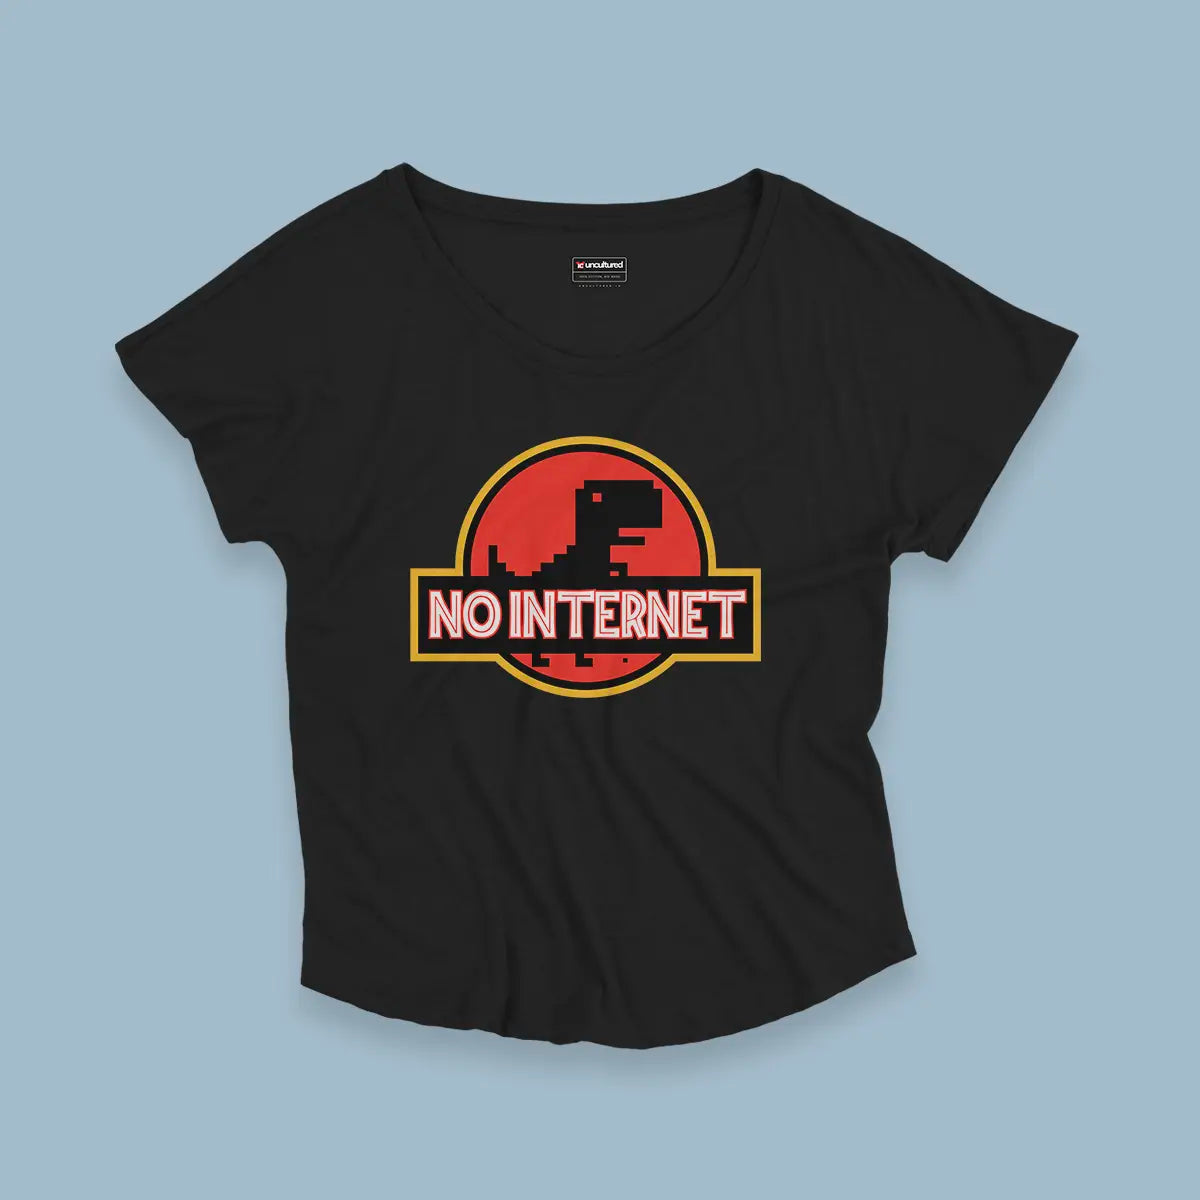 No internet - Croptop